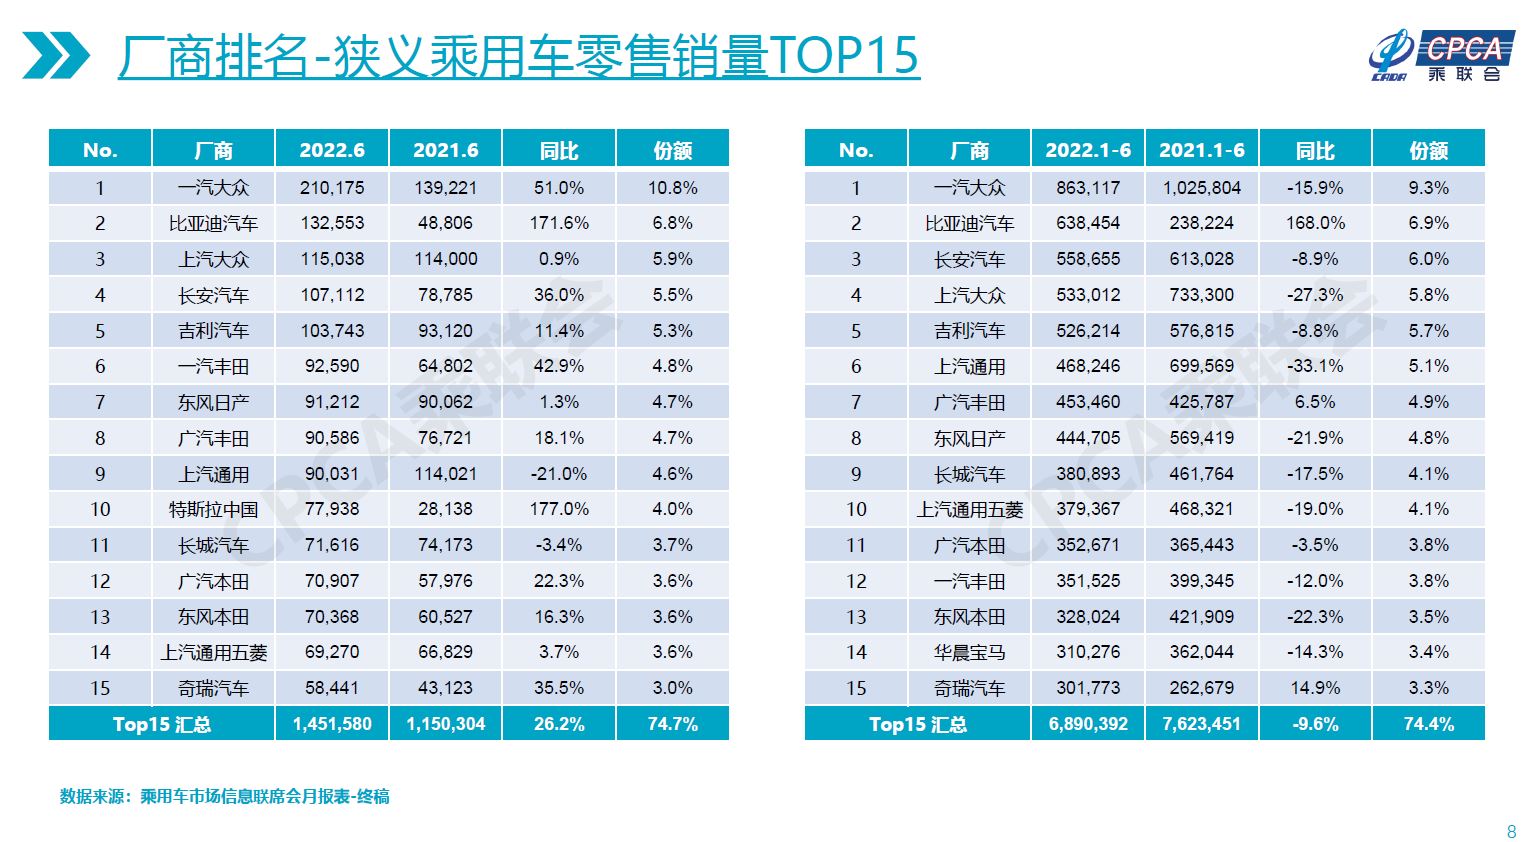 Fig3. June 2022 Retail Sales Top15 (w/o Vans)